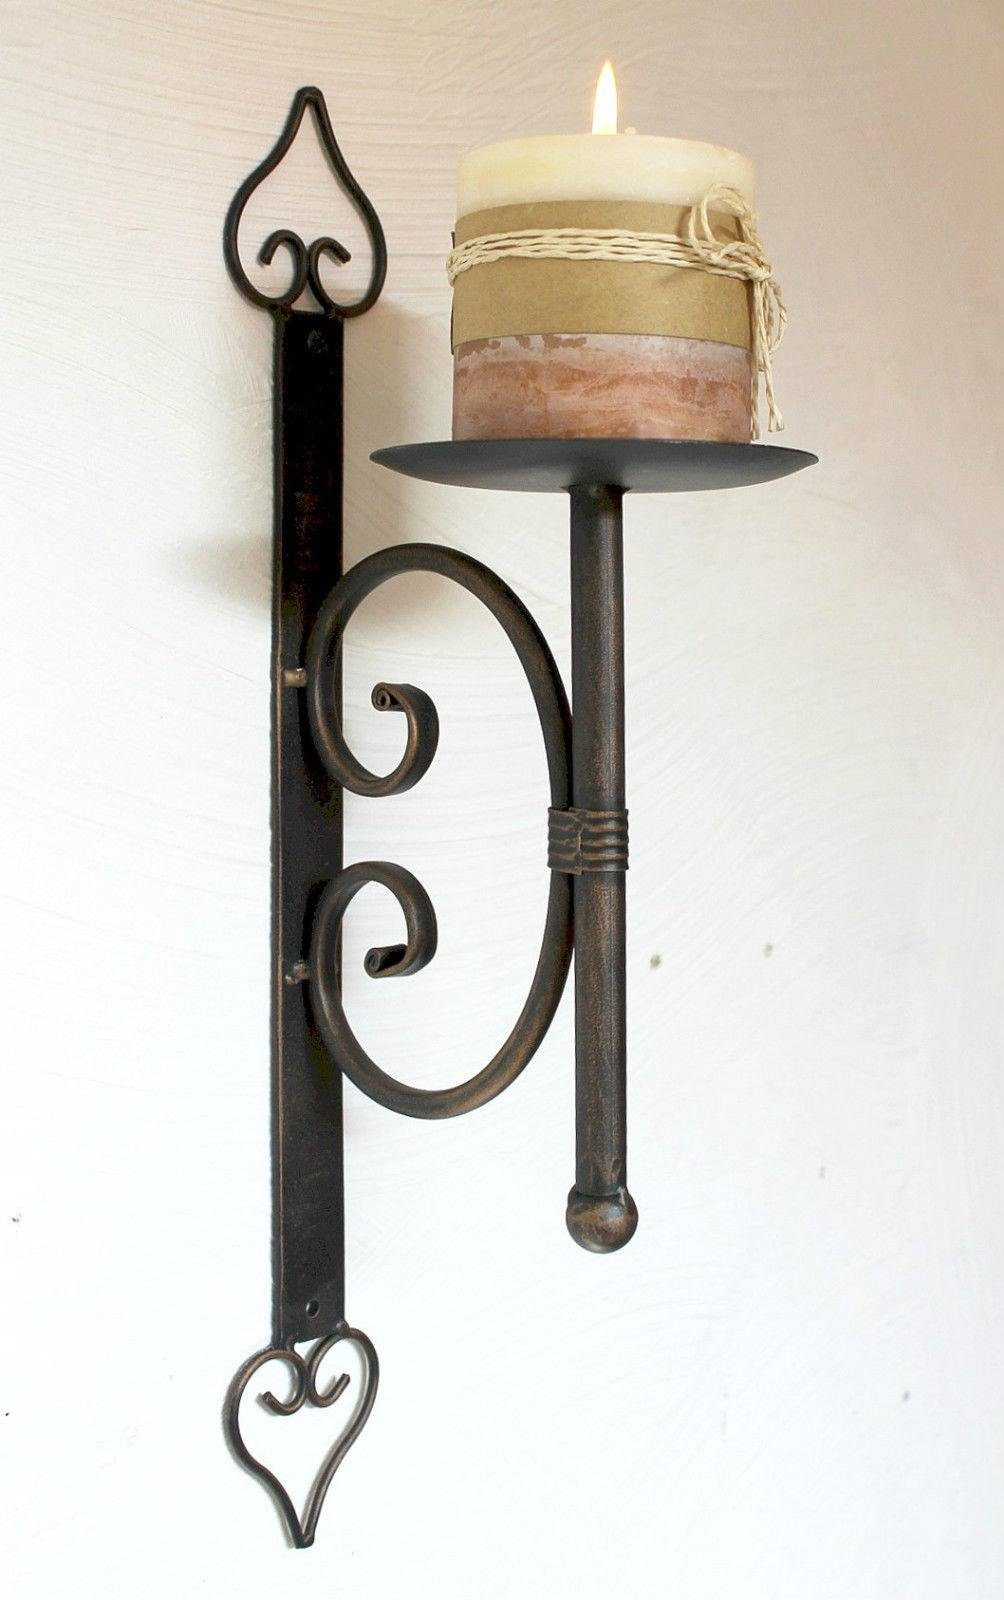 Metall Kerzenleuchter 41 12110 cm aus DanDiBo Wandkerzenhalter Kerzenhalter Wandkerzenhalter Wandleuchter